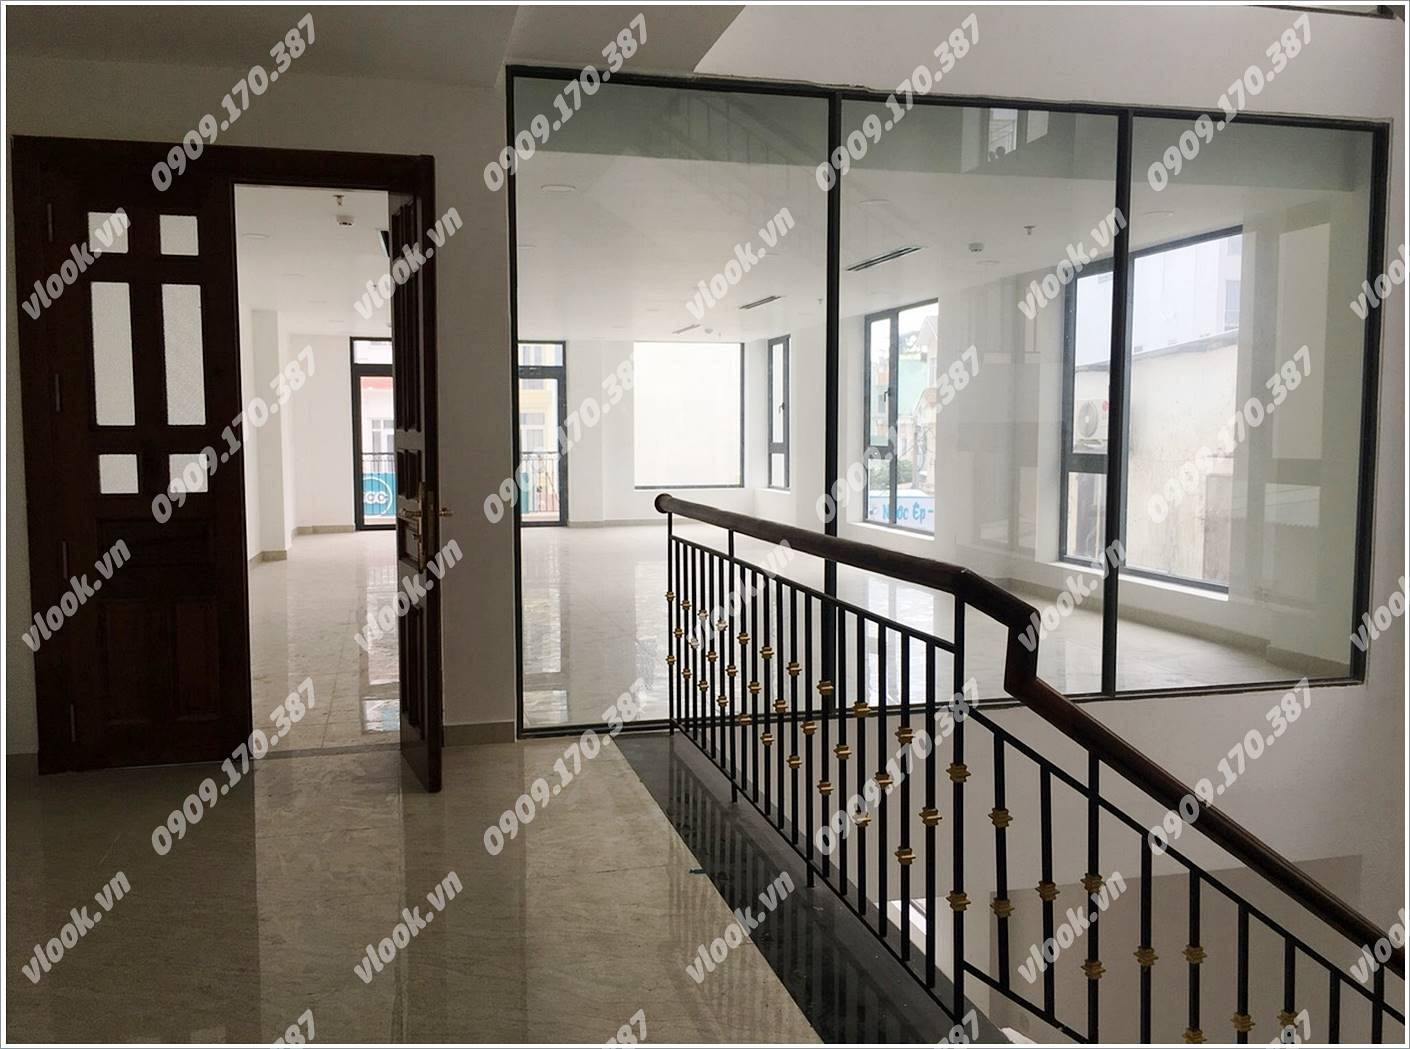 Cao ốc cho thuê văn phòng VNO 90 Bạch Đằng, Quận Tân Bình, TPHCM - vlook.vn